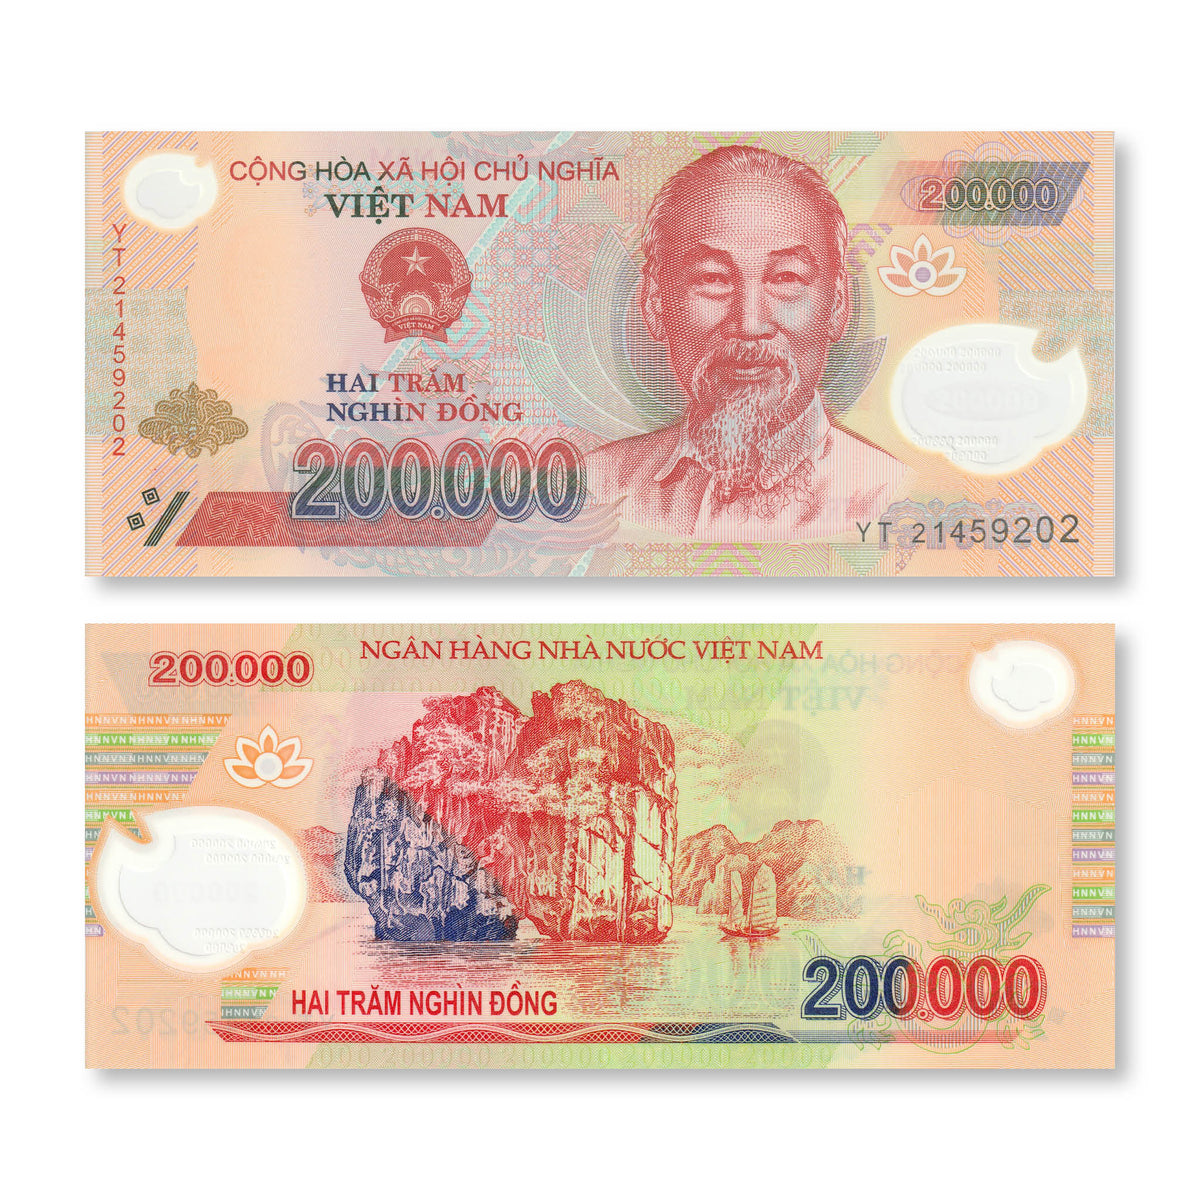 Vietnam 200000 Dong, 2021, B347l, P123, UNC - Robert's World Money - World Banknotes